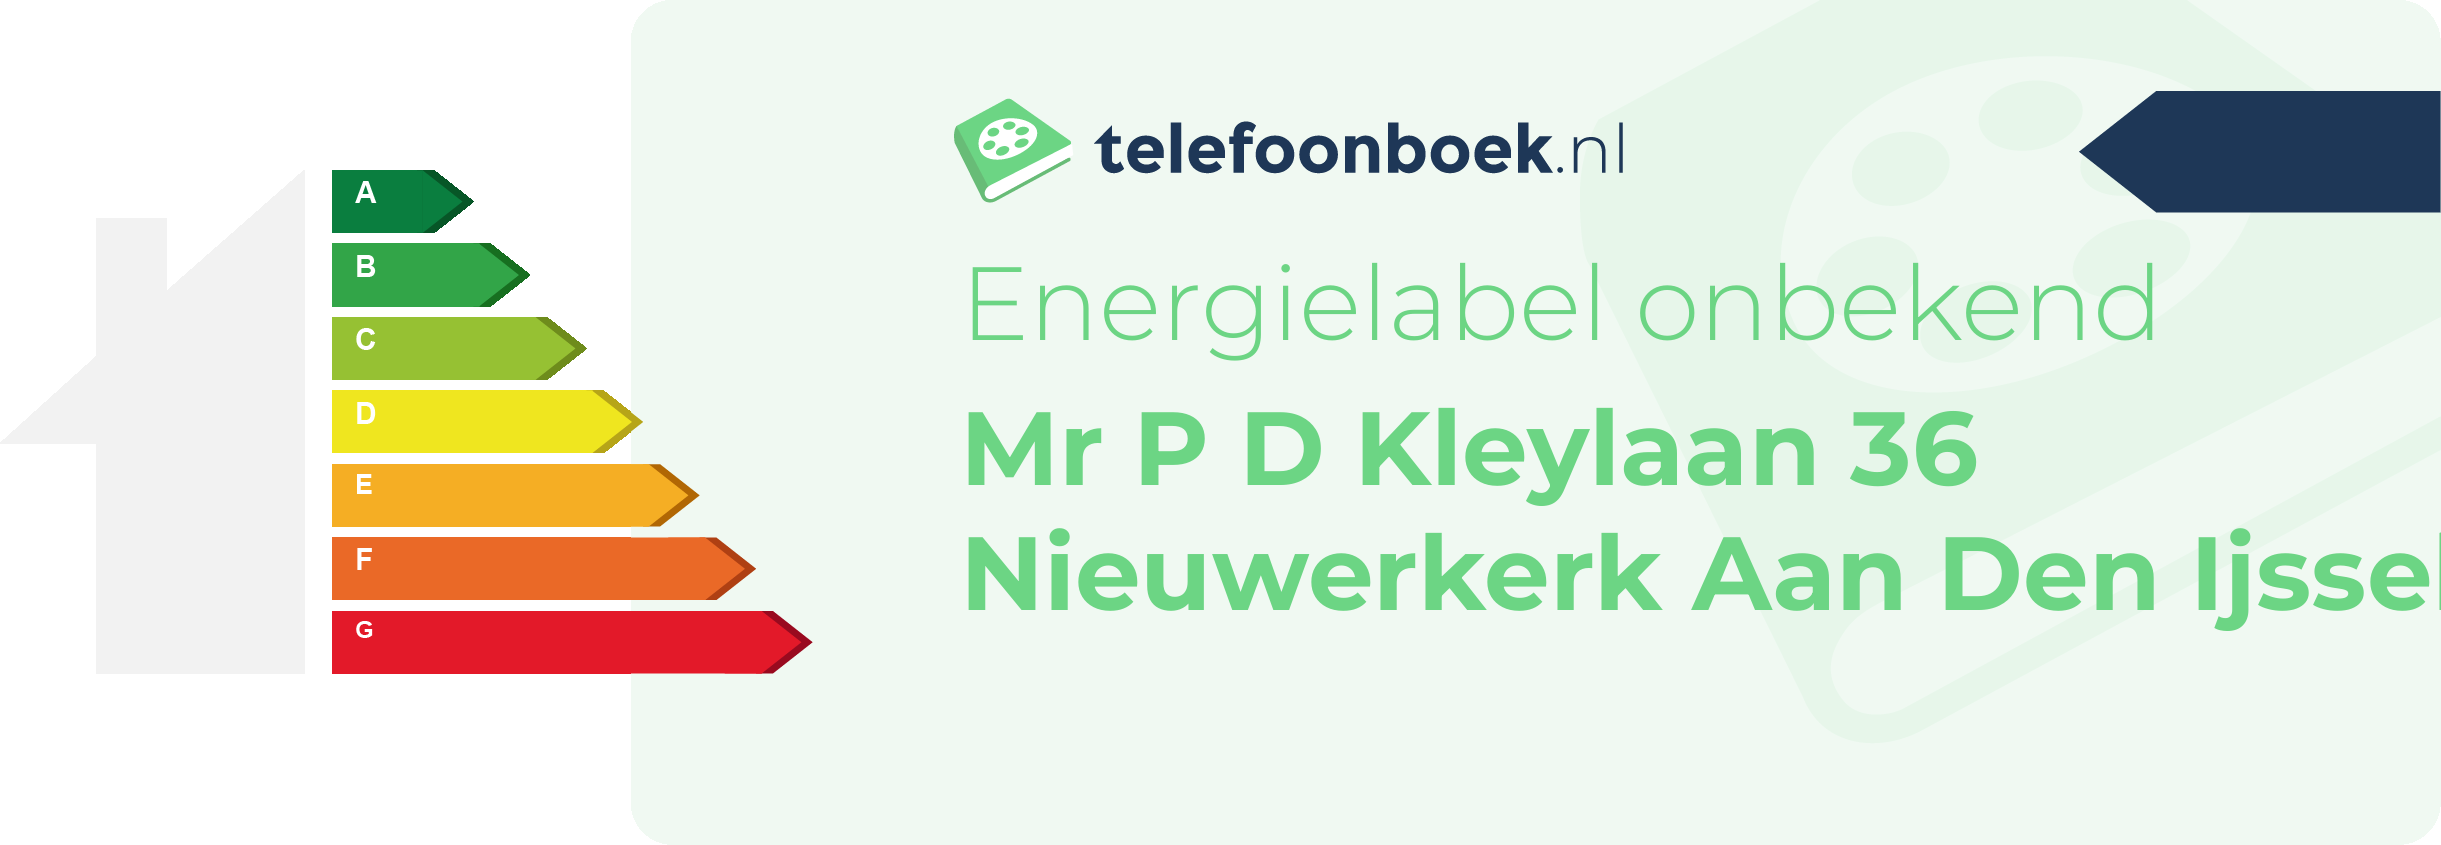 Energielabel Mr P D Kleylaan 36 Nieuwerkerk Aan Den Ijssel